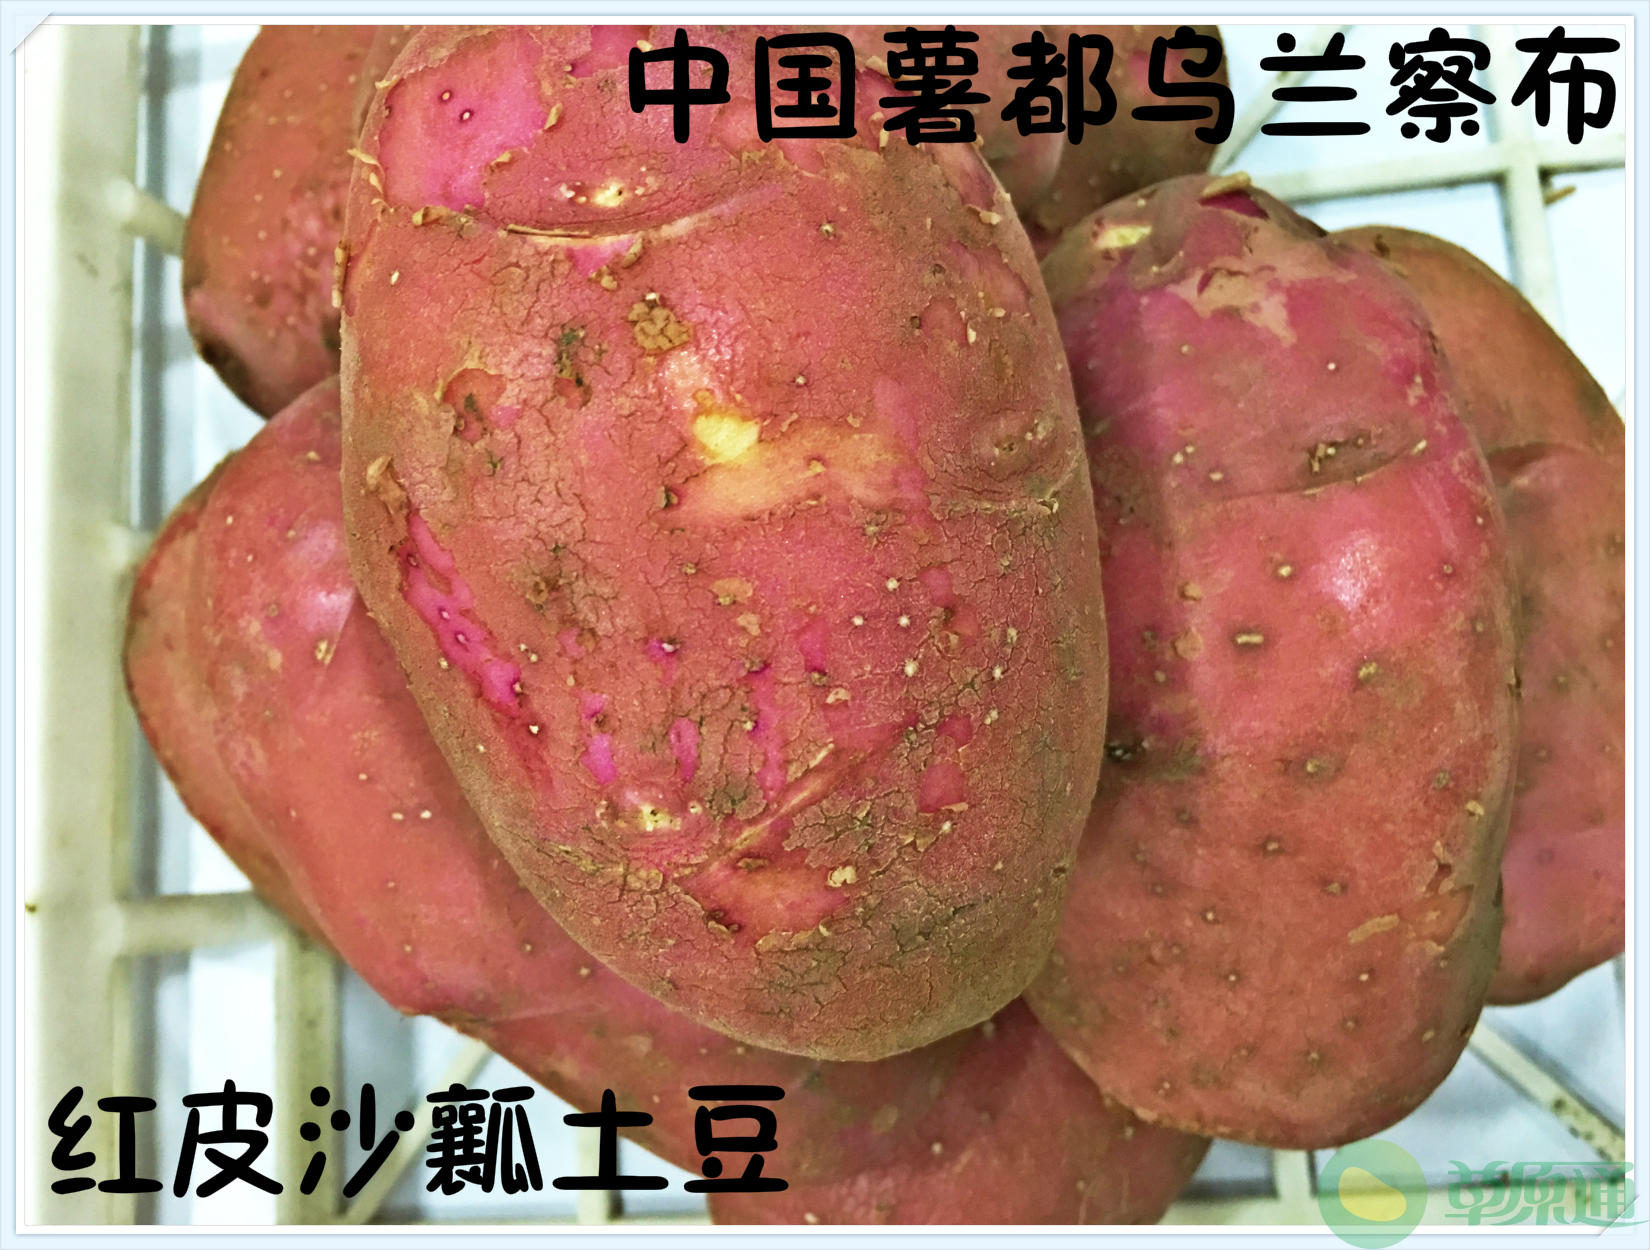 内蒙古红皮土豆 红皮黄心 土豆种子  沙瓤土豆 薯都直发5斤包邮